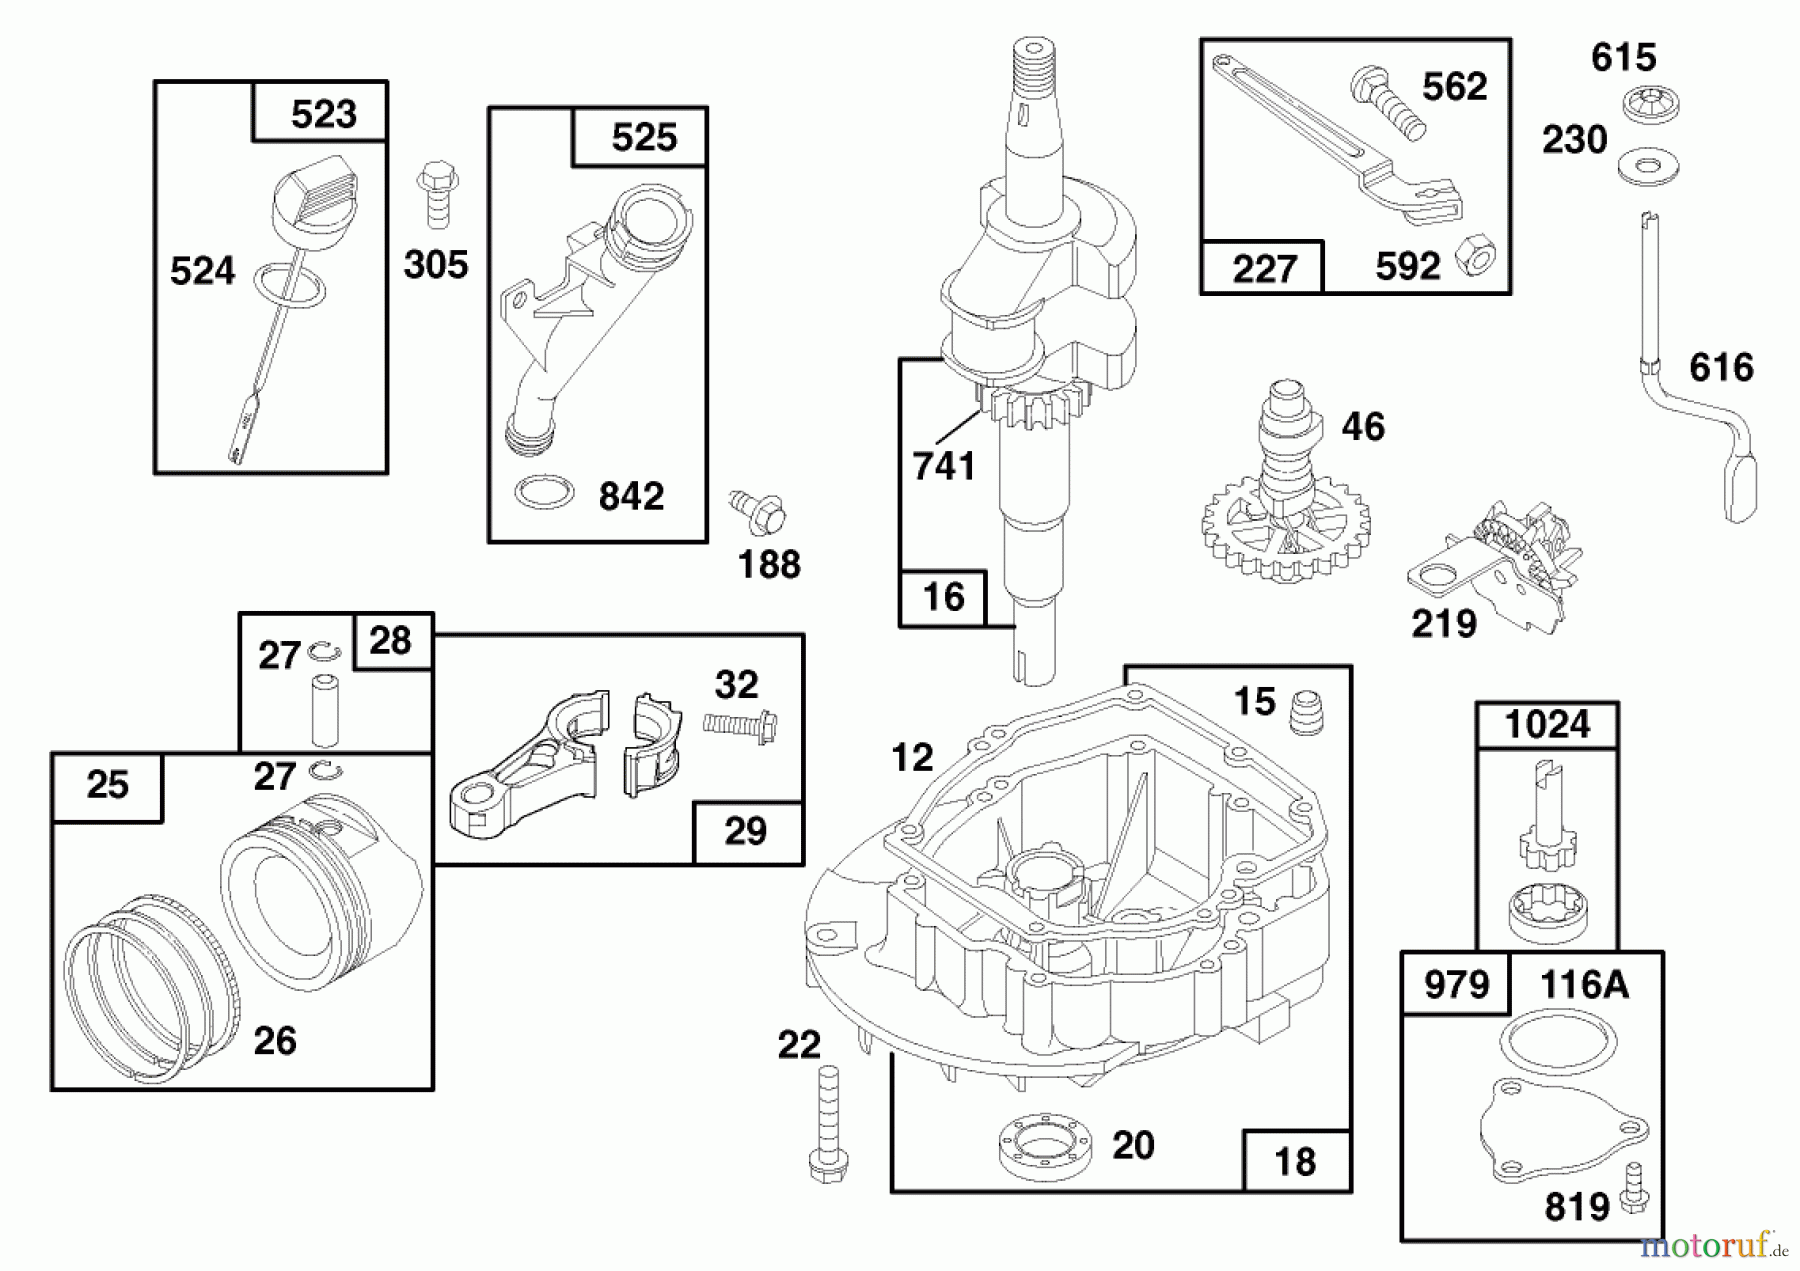  Toro Neu Mowers, Walk-Behind Seite 1 20465 - Toro Lawnmower, 1996 (6900001-6999999) ENGINE GTS 150 (MODEL NO. 20466 ONLY) #2